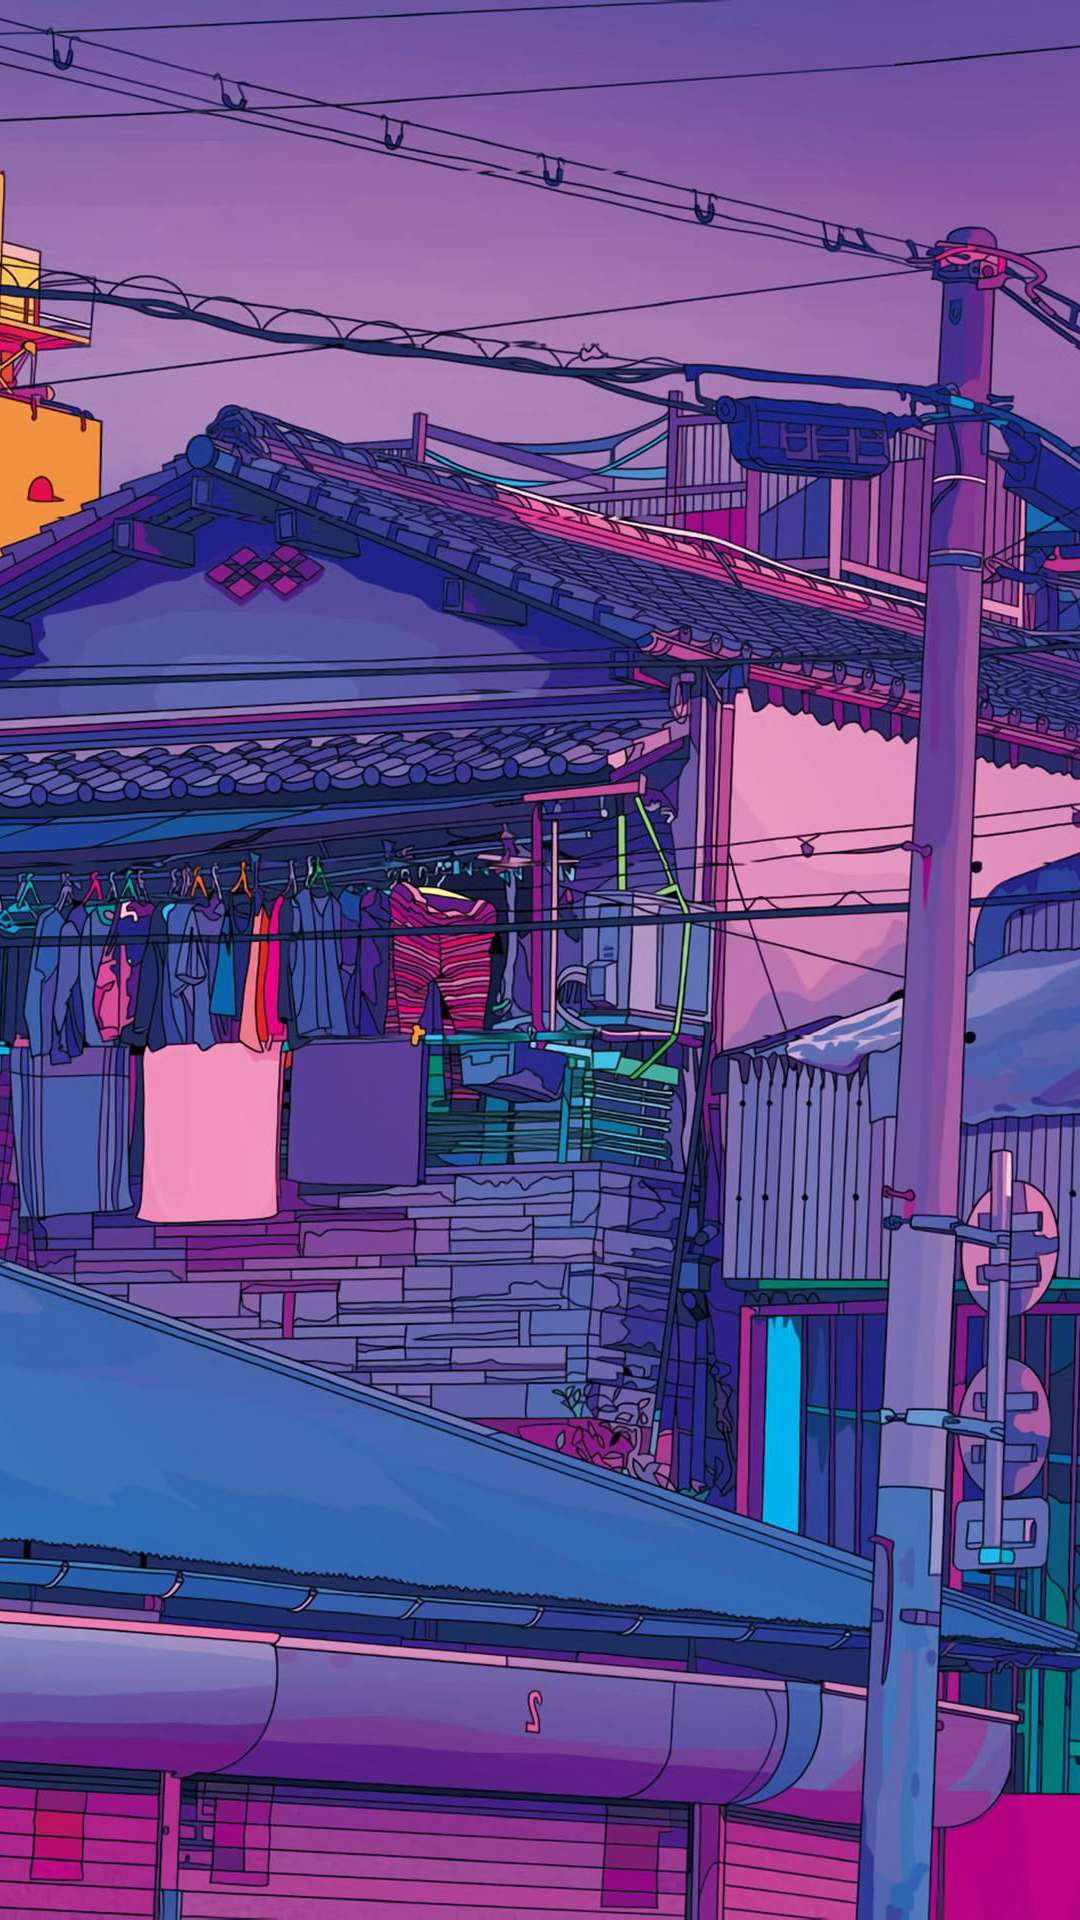 Download wallpaper 3840x2400 girl kimono japan anime 4k ultra hd 1610  hd background